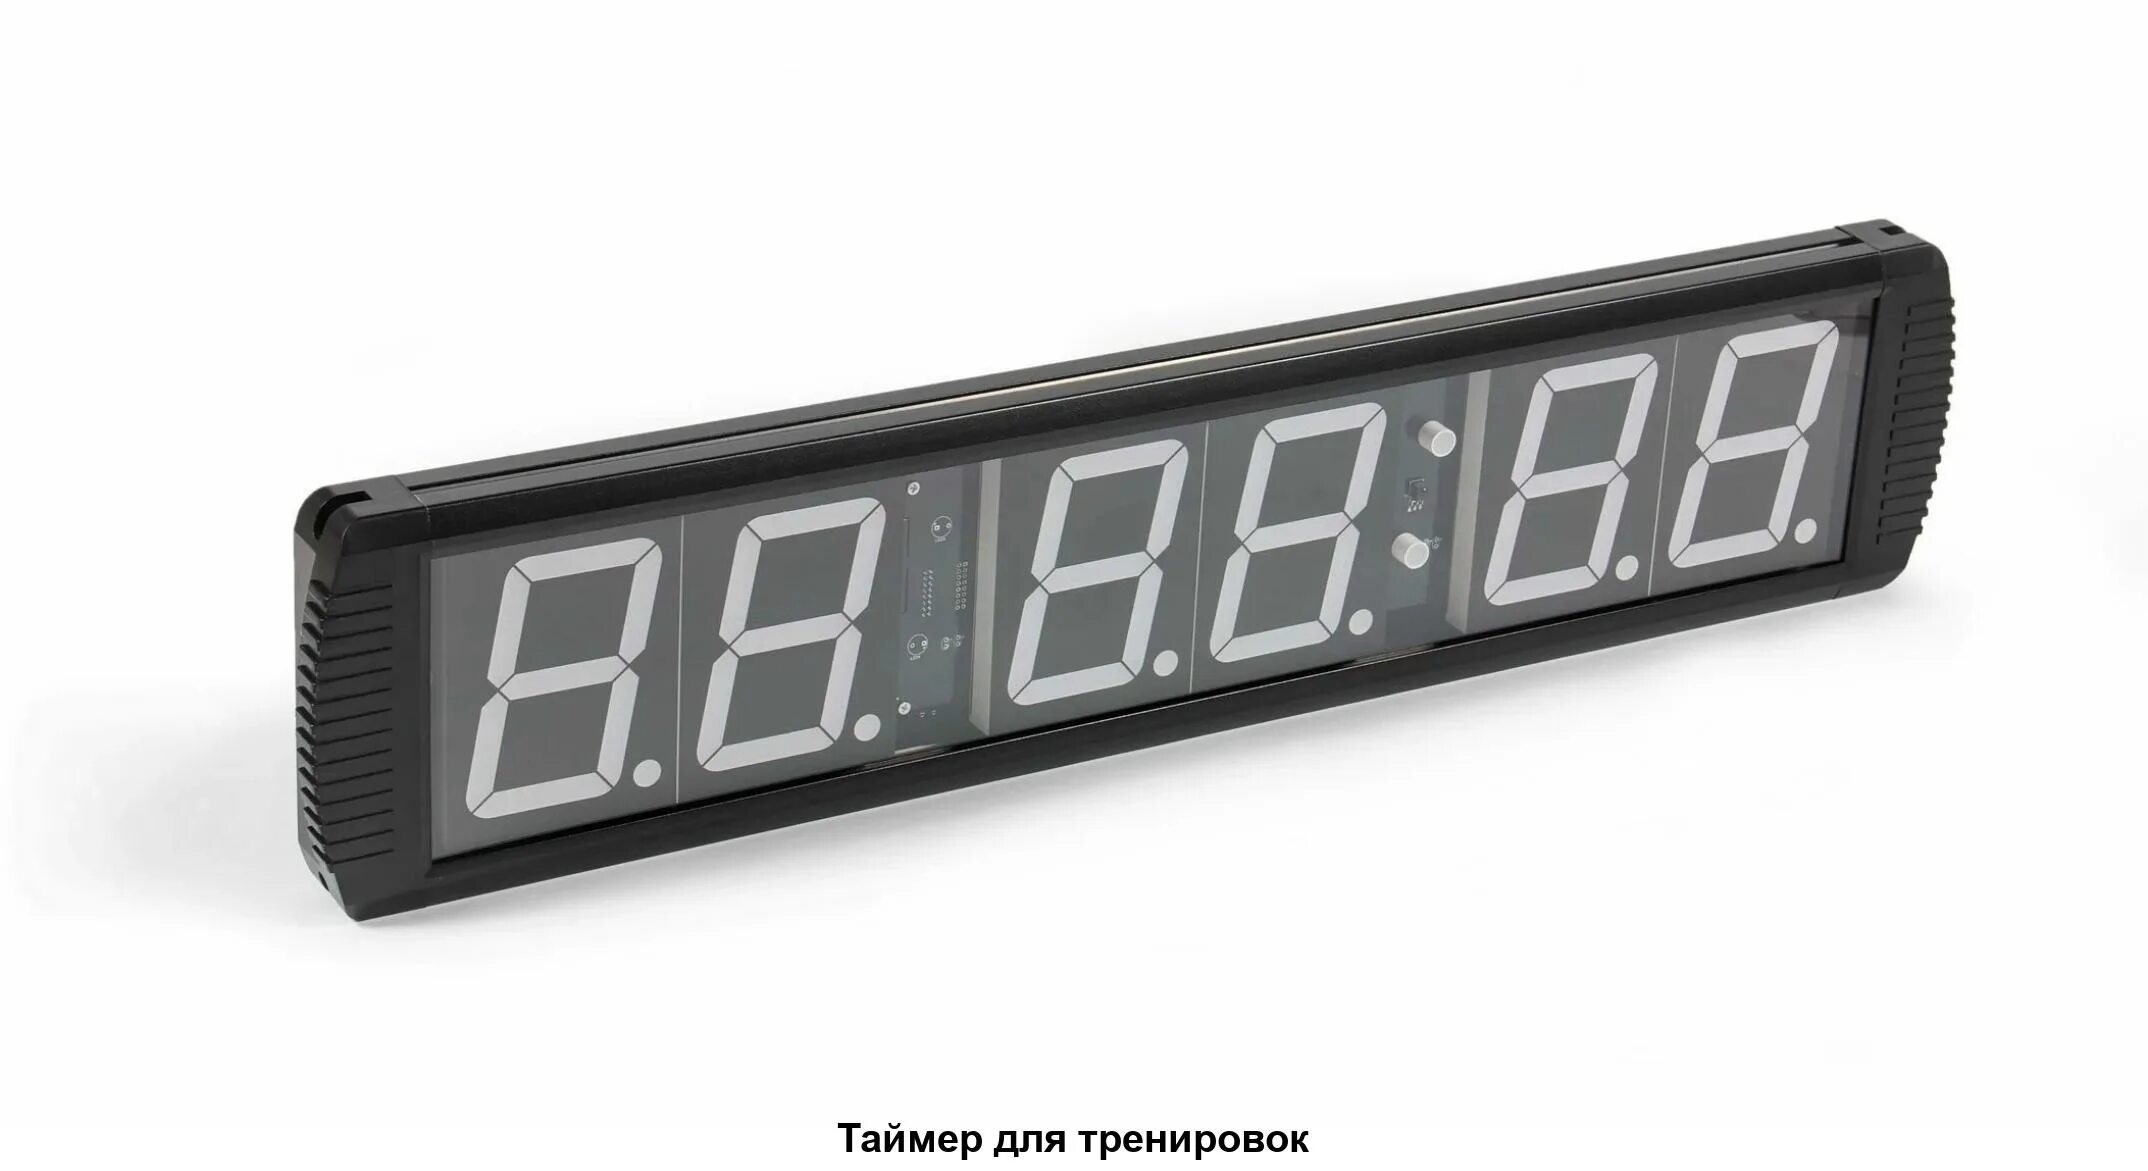 Таймер Harvia ZSK-510. Часы таймер. Таймер для тренировок. Часы с секундомером и таймером. Таймер для рассады